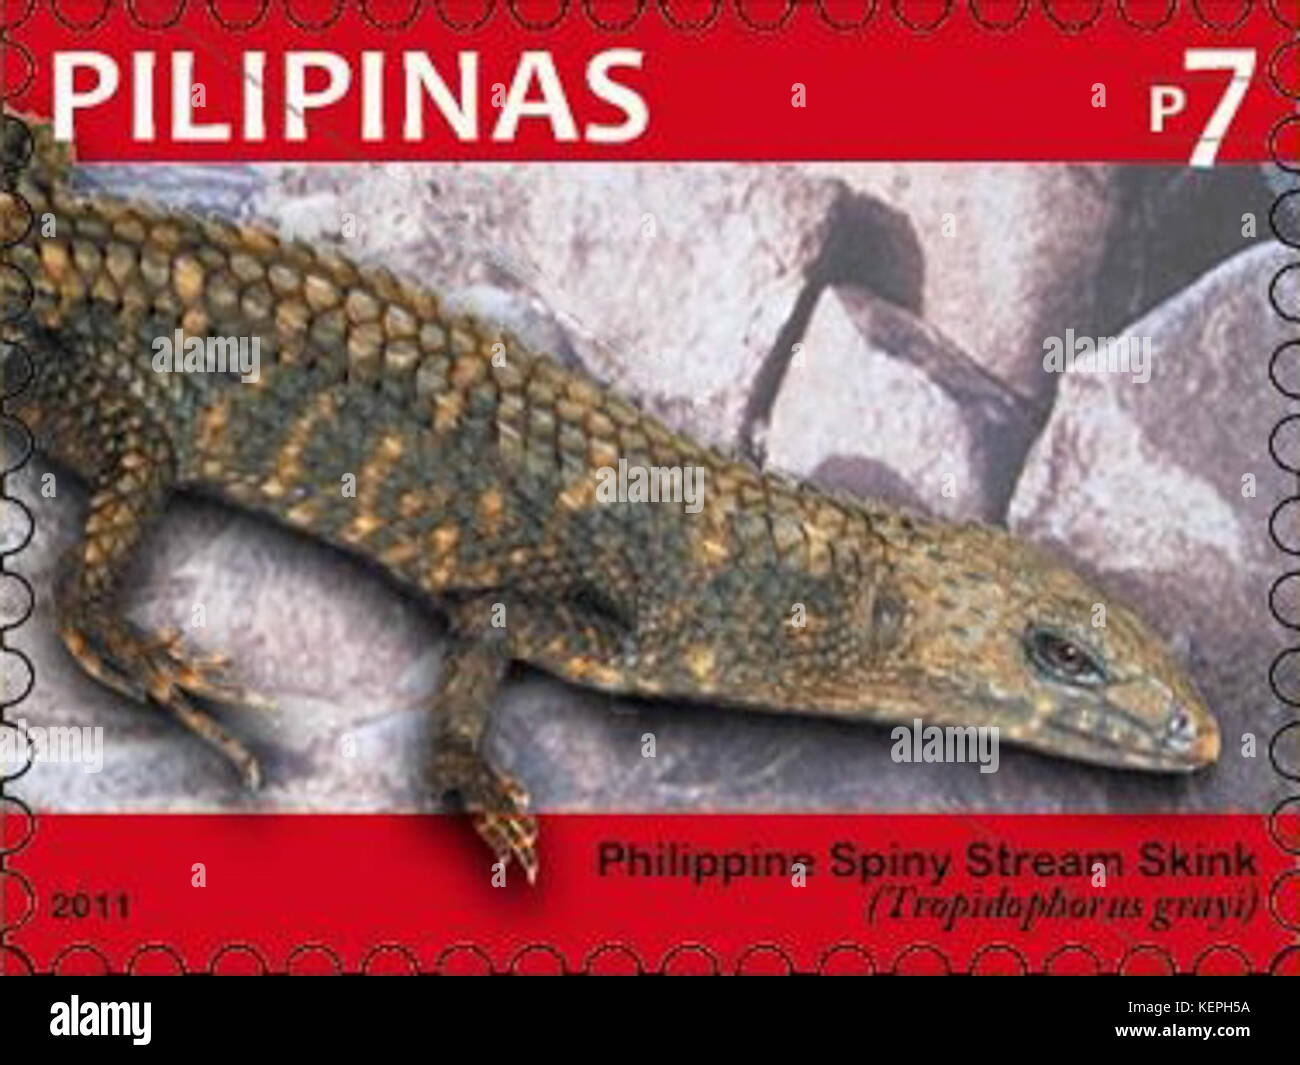 Tropidophorus grayi 2011 stamp of the Philippines Stock Photo